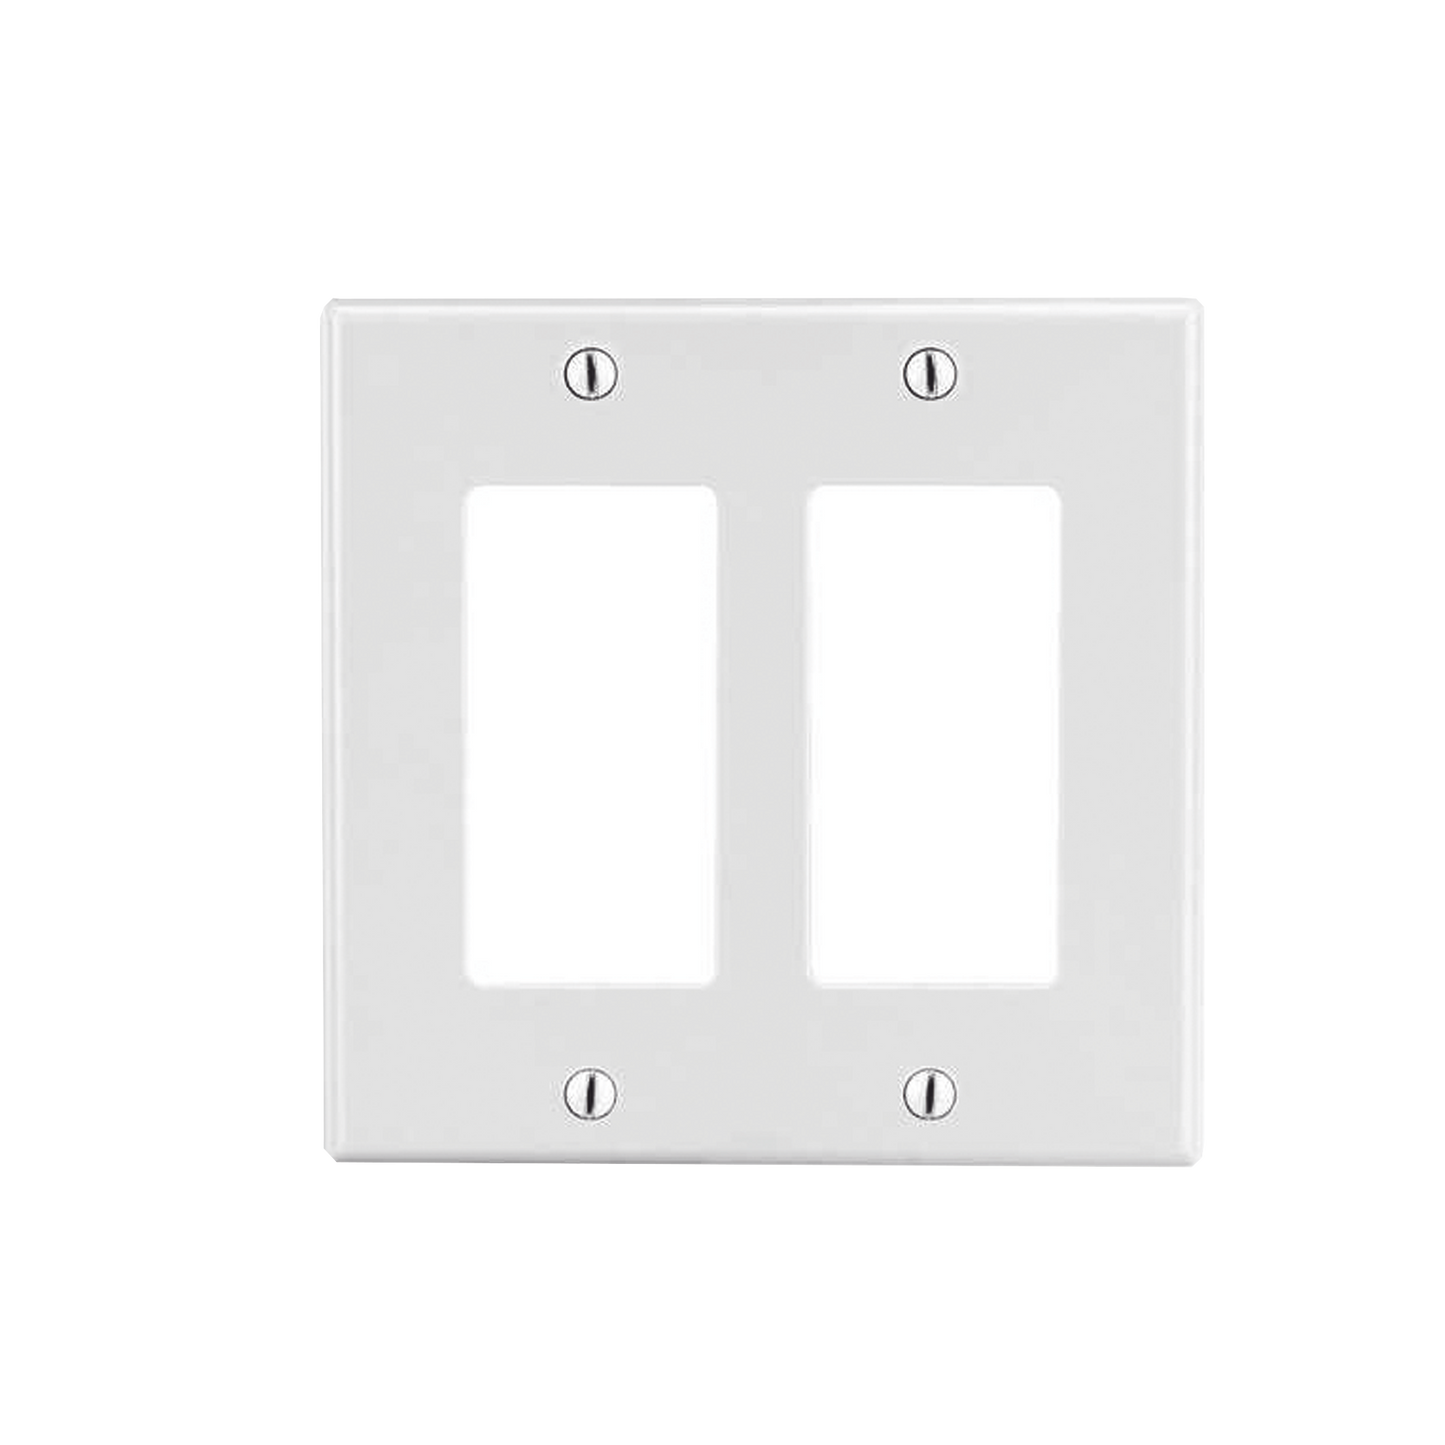 Tapa para Caja Multigang / Contacto Doble / Color Blanco.